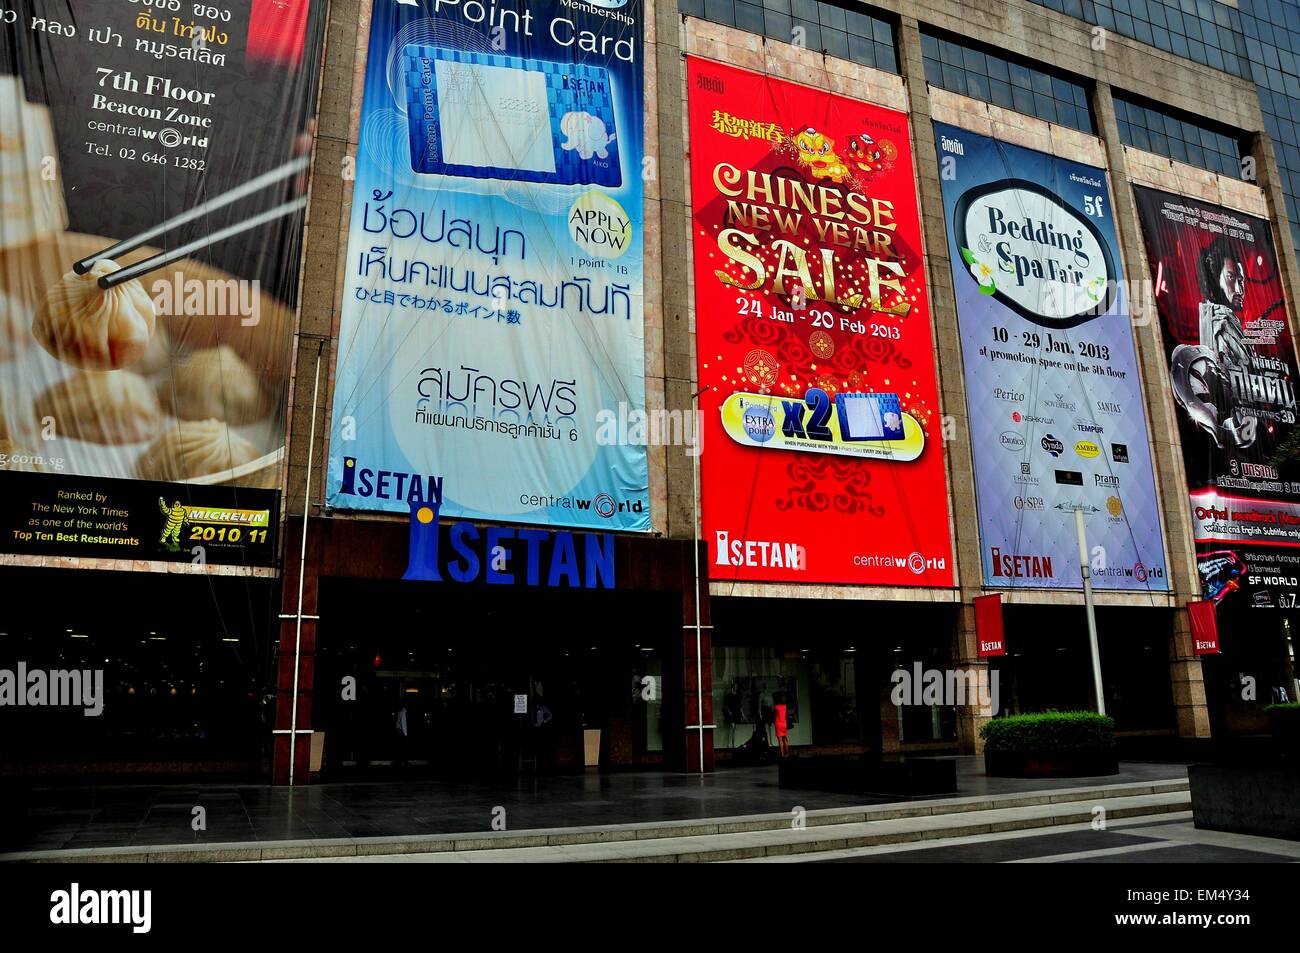 Bangkok, Thaïlande : les panneaux publicitaires la promotion des ventes, des restaurants, et des films sur la façade d'entrée du magasin à Istetan Banque D'Images